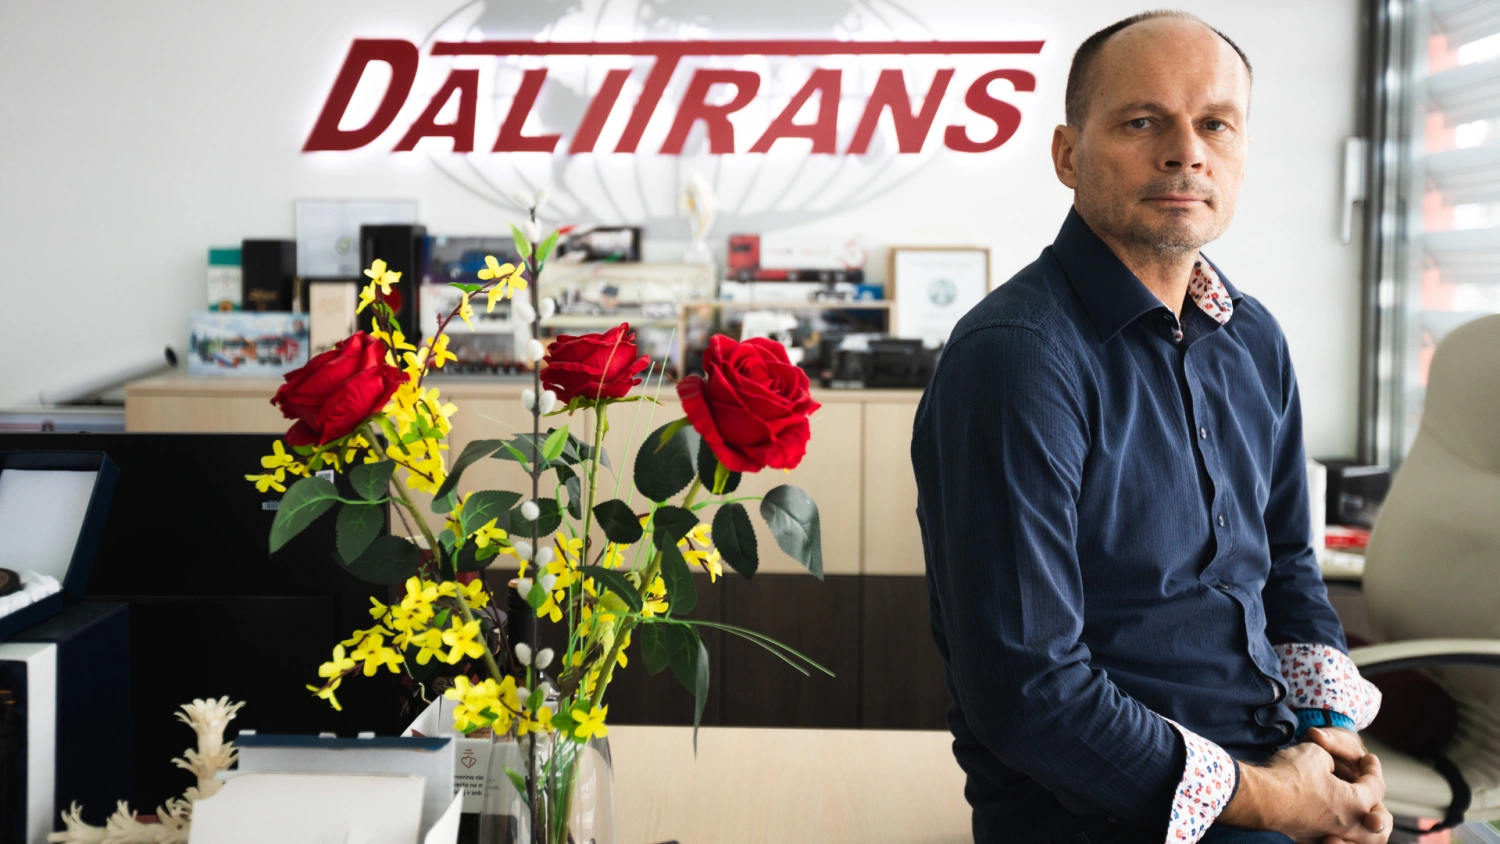 Šéf Dalitransu začínal s pokazeným nákladiakom, dnes má tržby takmer 200 miliónov